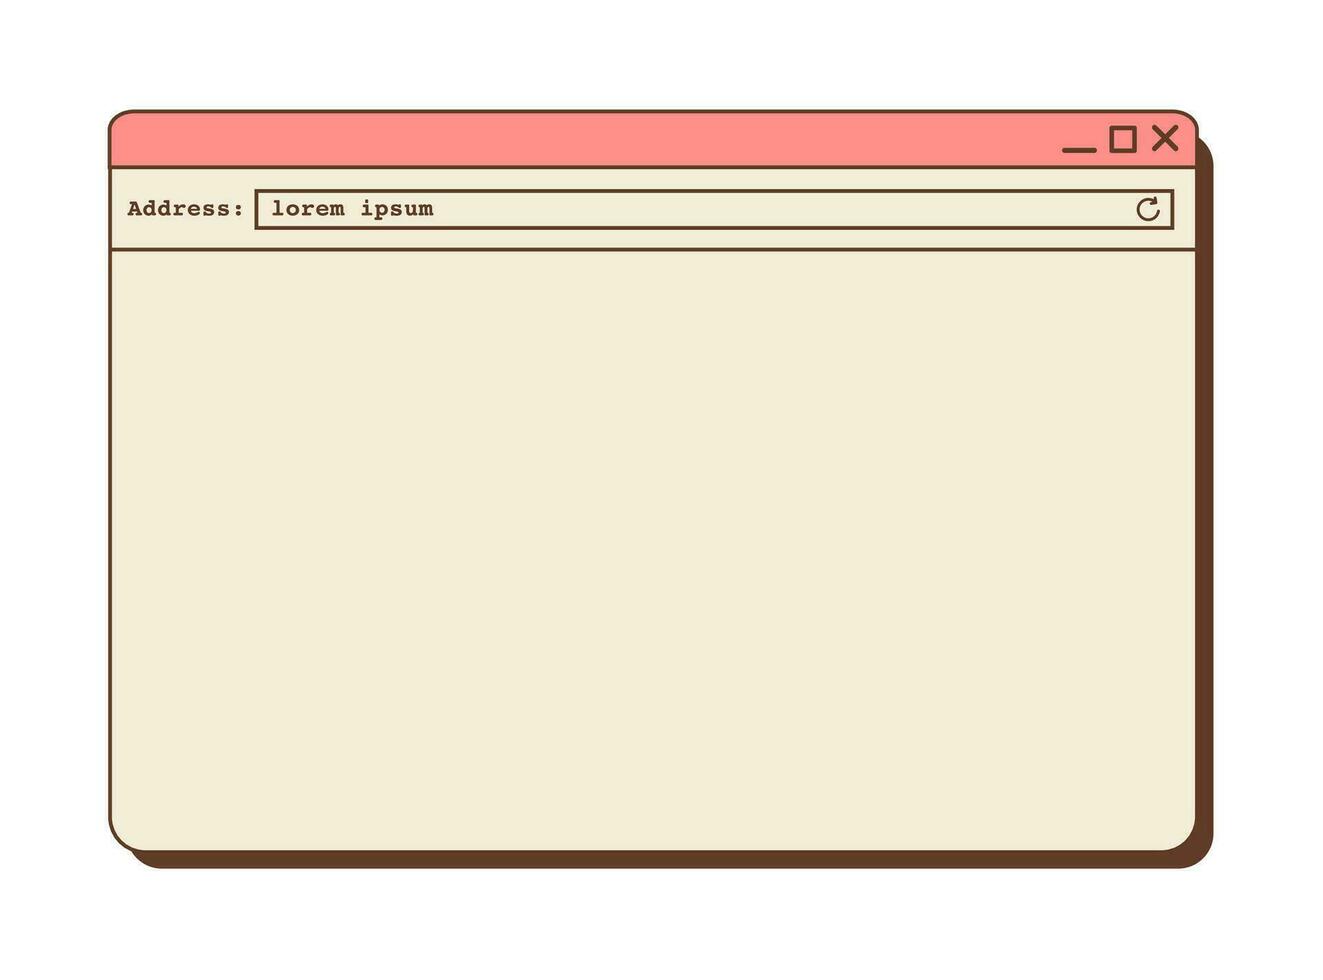 retro dampgolf bureaublad browser in levendig kleur. 80s 90s oud computer gebruiker koppel grafiek met een Open tab en adres bar. nostalgisch retro stijl in werking systeem. vector vlak illustratie.